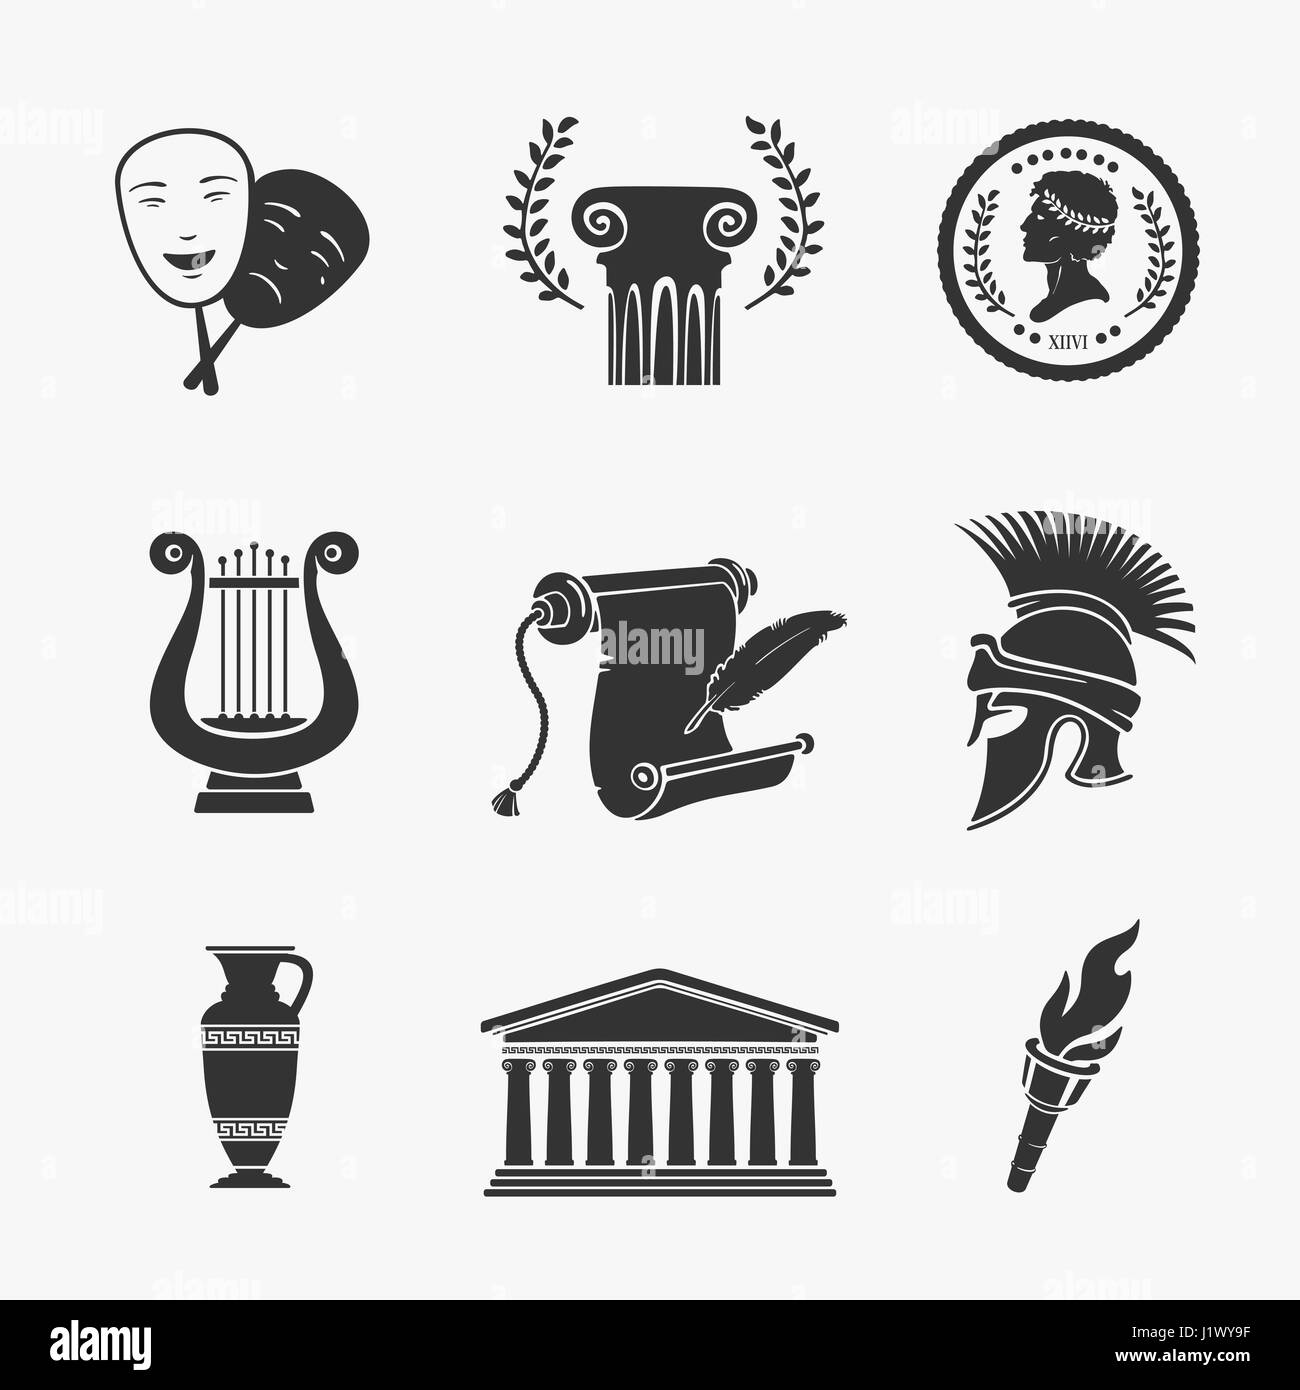 Grecia simbolo immagini e fotografie stock ad alta risoluzione - Alamy